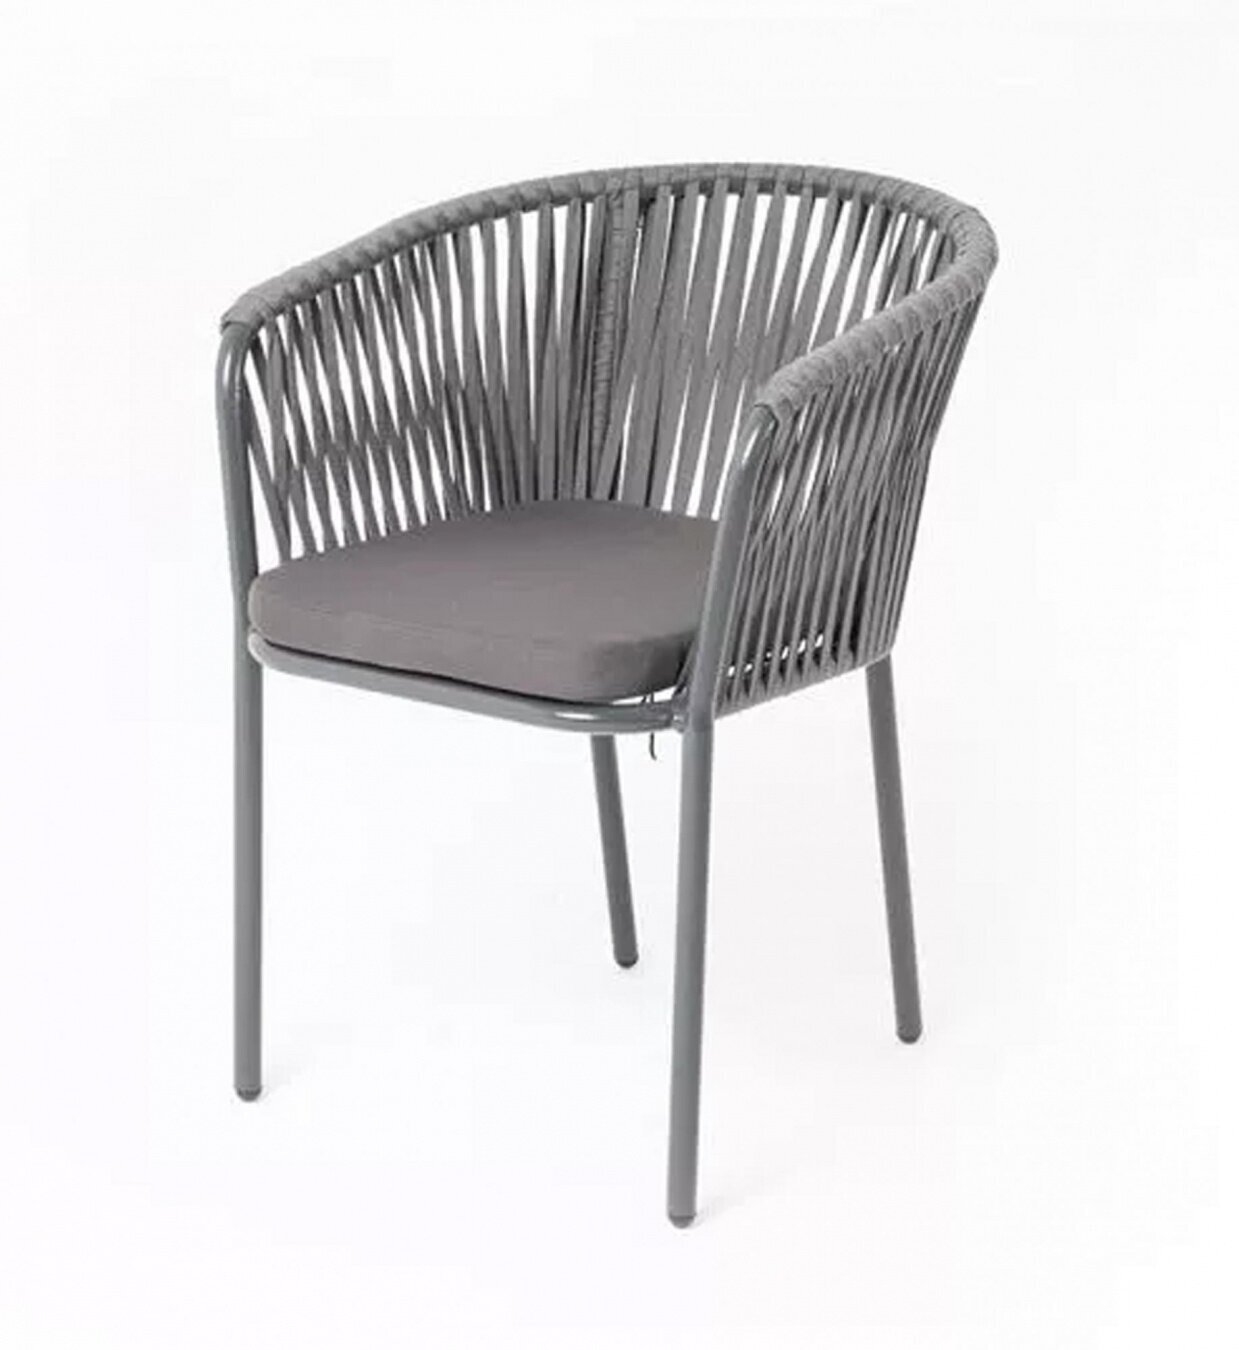 Плетеный стул "Бордо" из роупа (веревки), 4SiS, серый